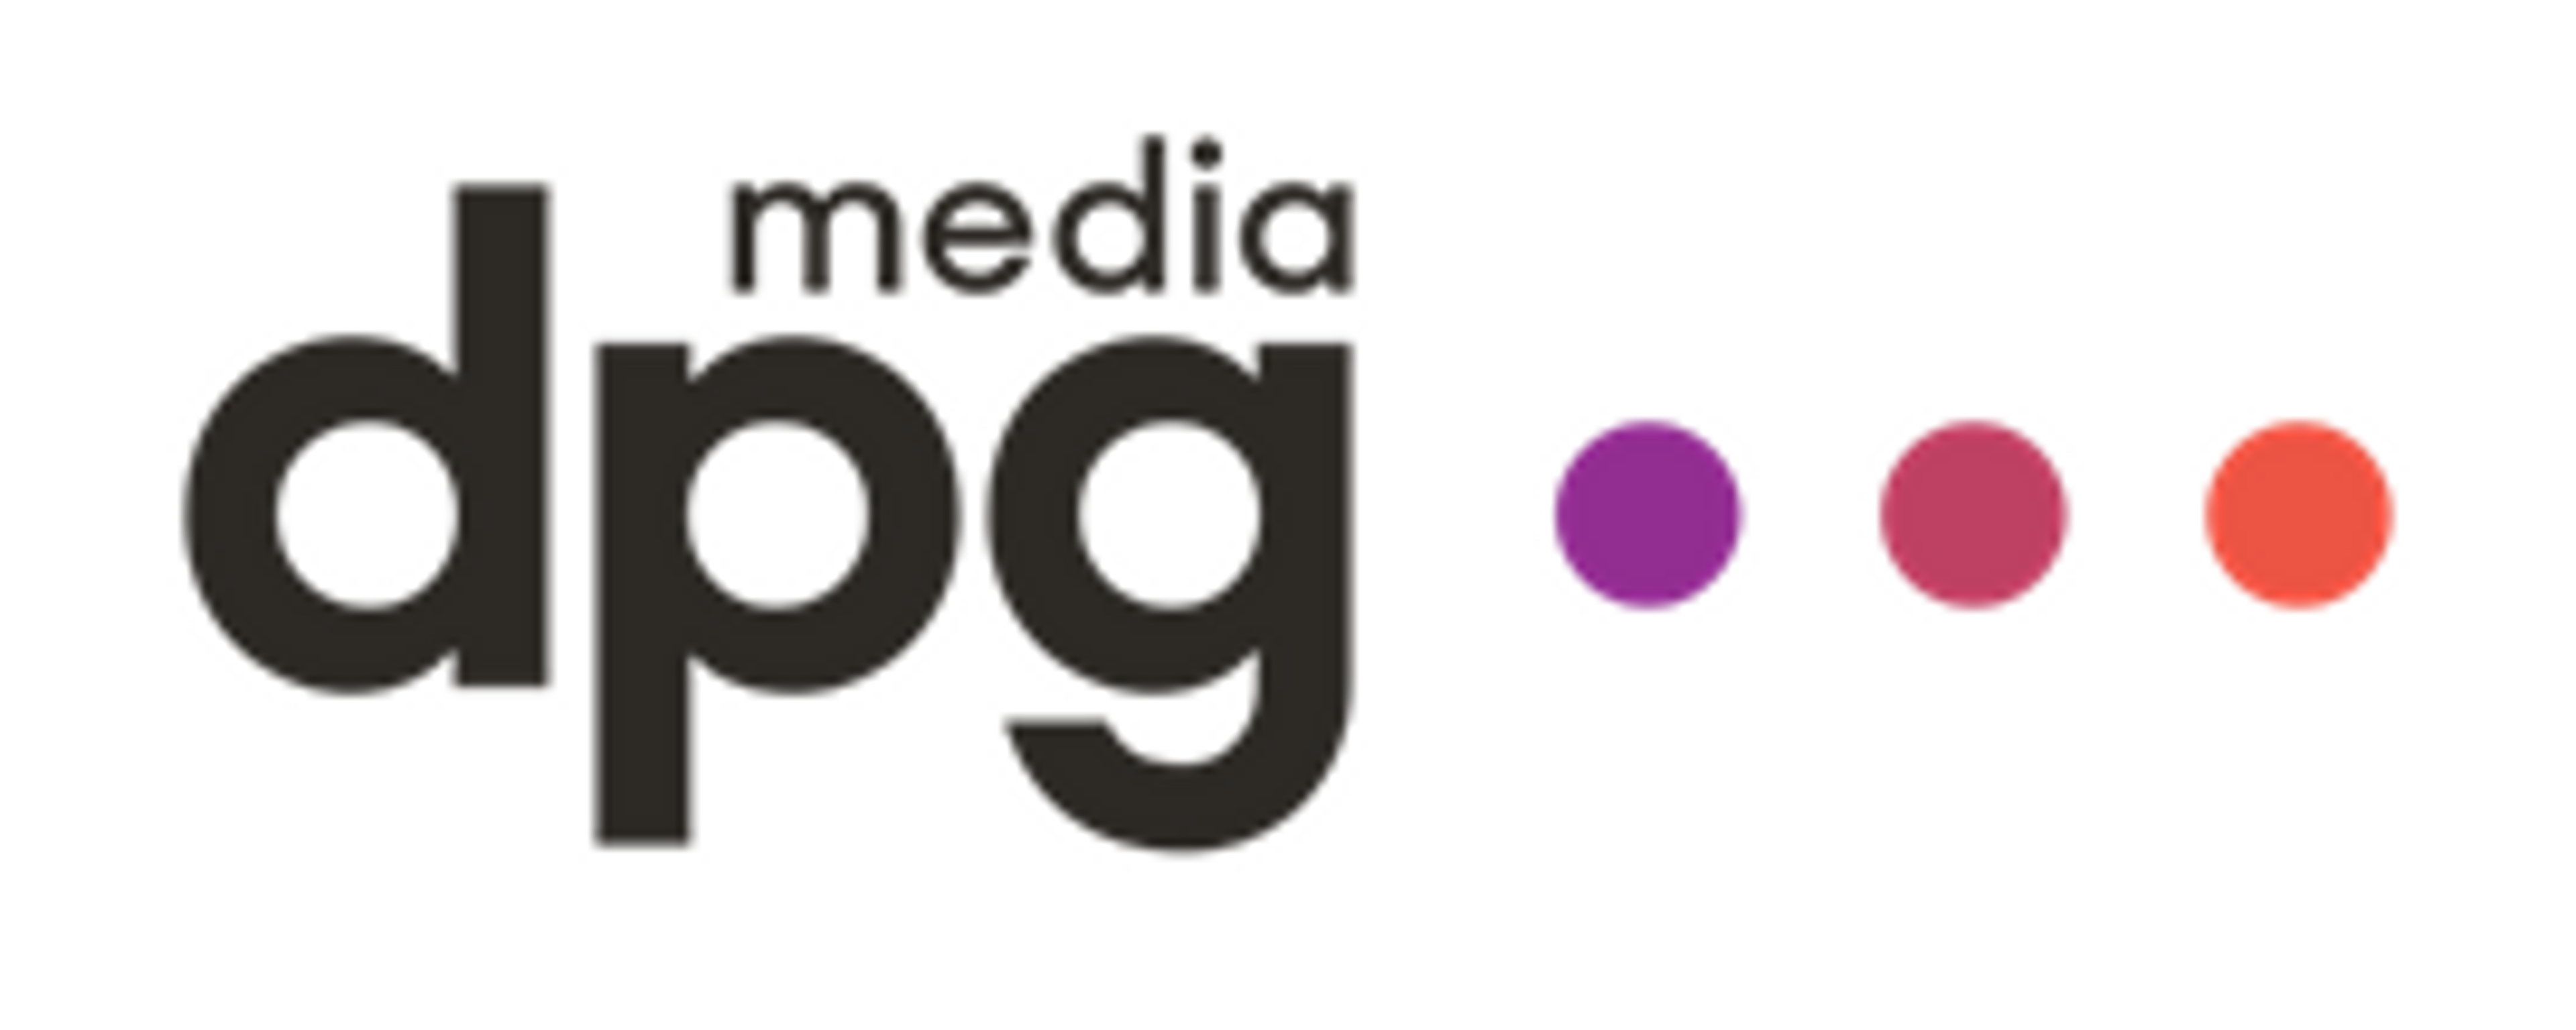 De Persgroep verandert per september 2019 haar naam in DPG Media